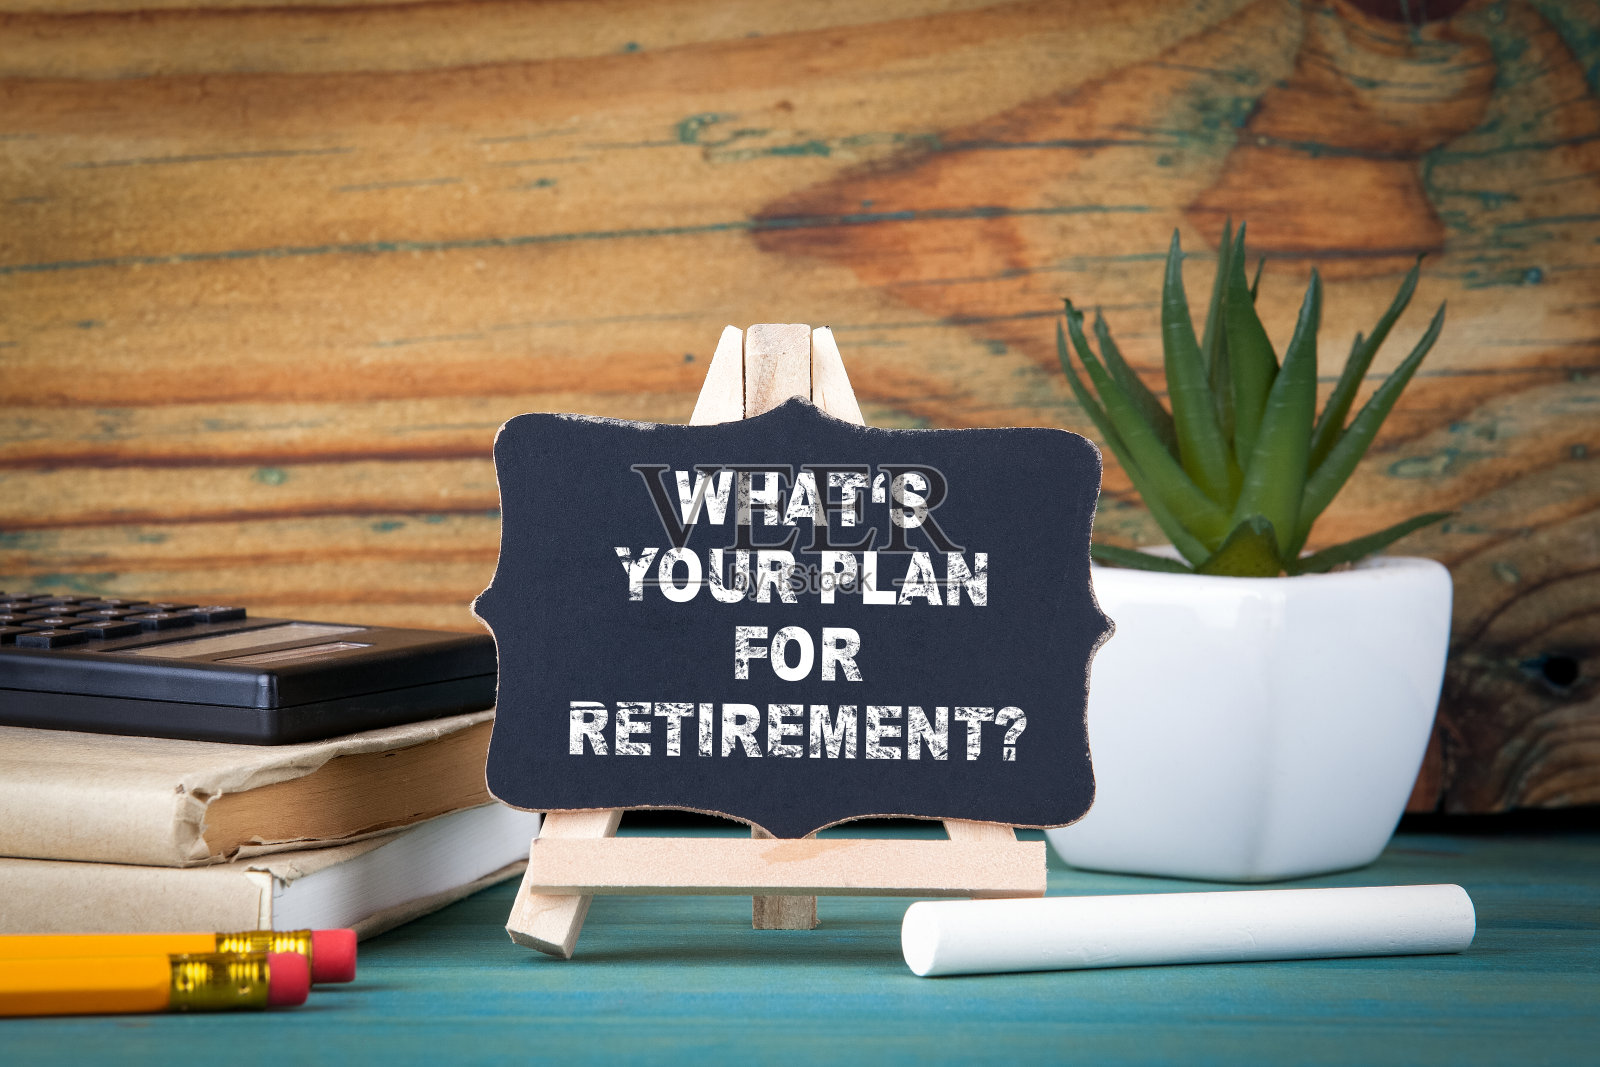 你的退休计划是什么?小木板和粉笔在桌子上照片摄影图片